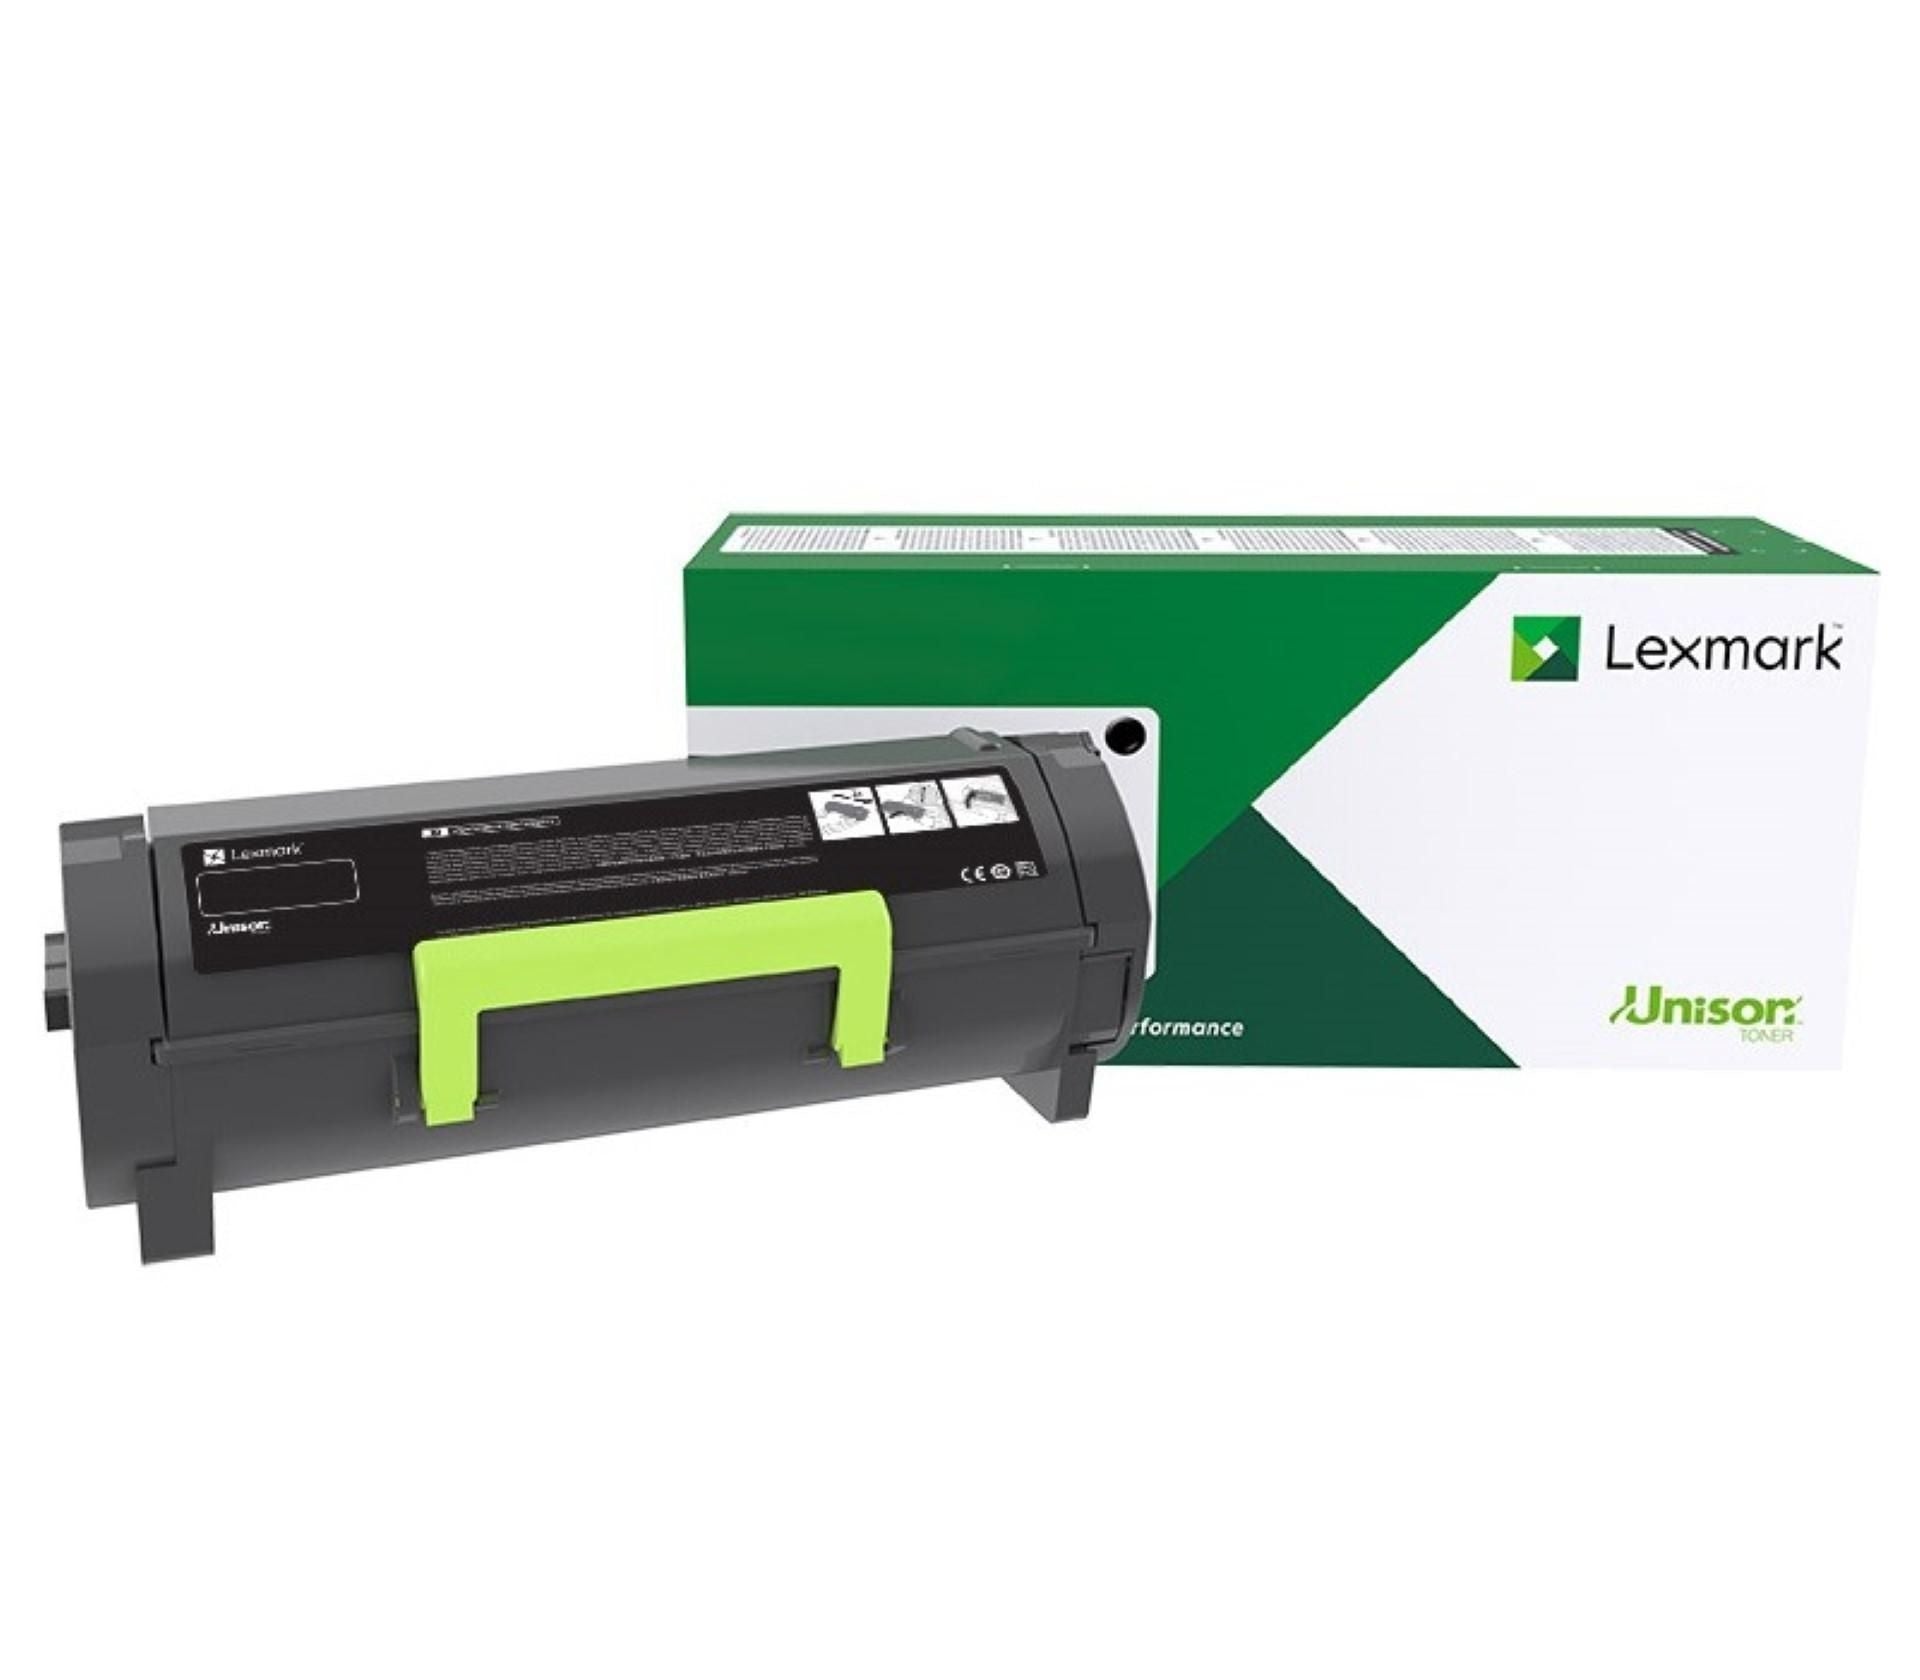 Toner Laser Lexmark / Color Amarillo Rendimiento Estandar C2340Y0 / Hasta 1,000 Paginas / 5 % De Cobertura / P/Mod. C2535Dw , Mc2535Adwe